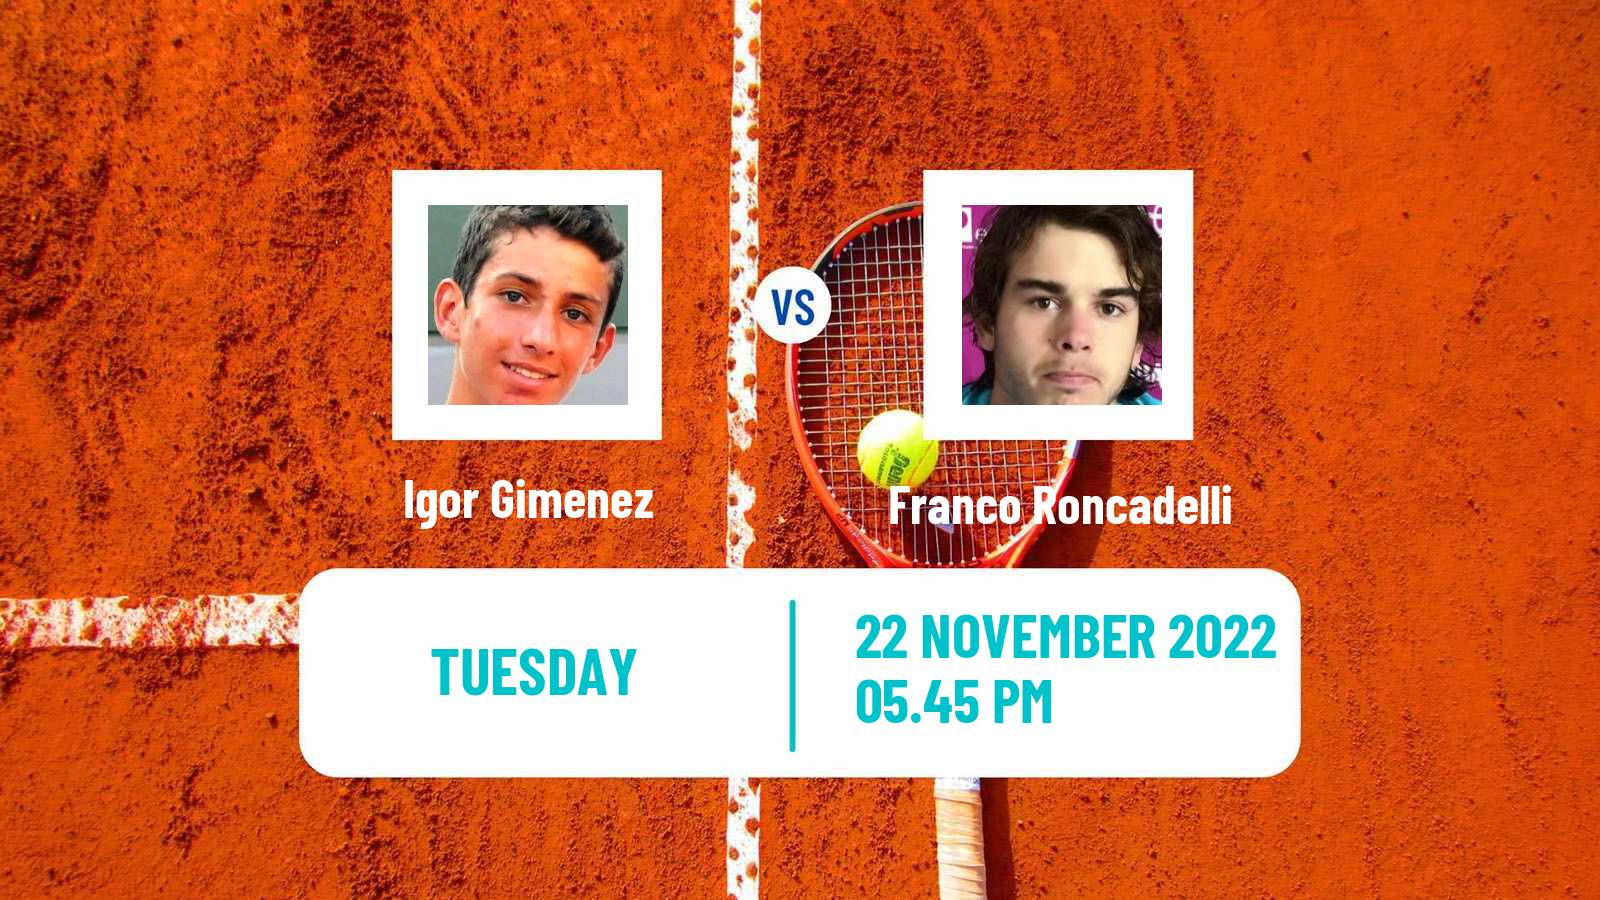 Tennis ITF Tournaments Igor Gimenez - Franco Roncadelli